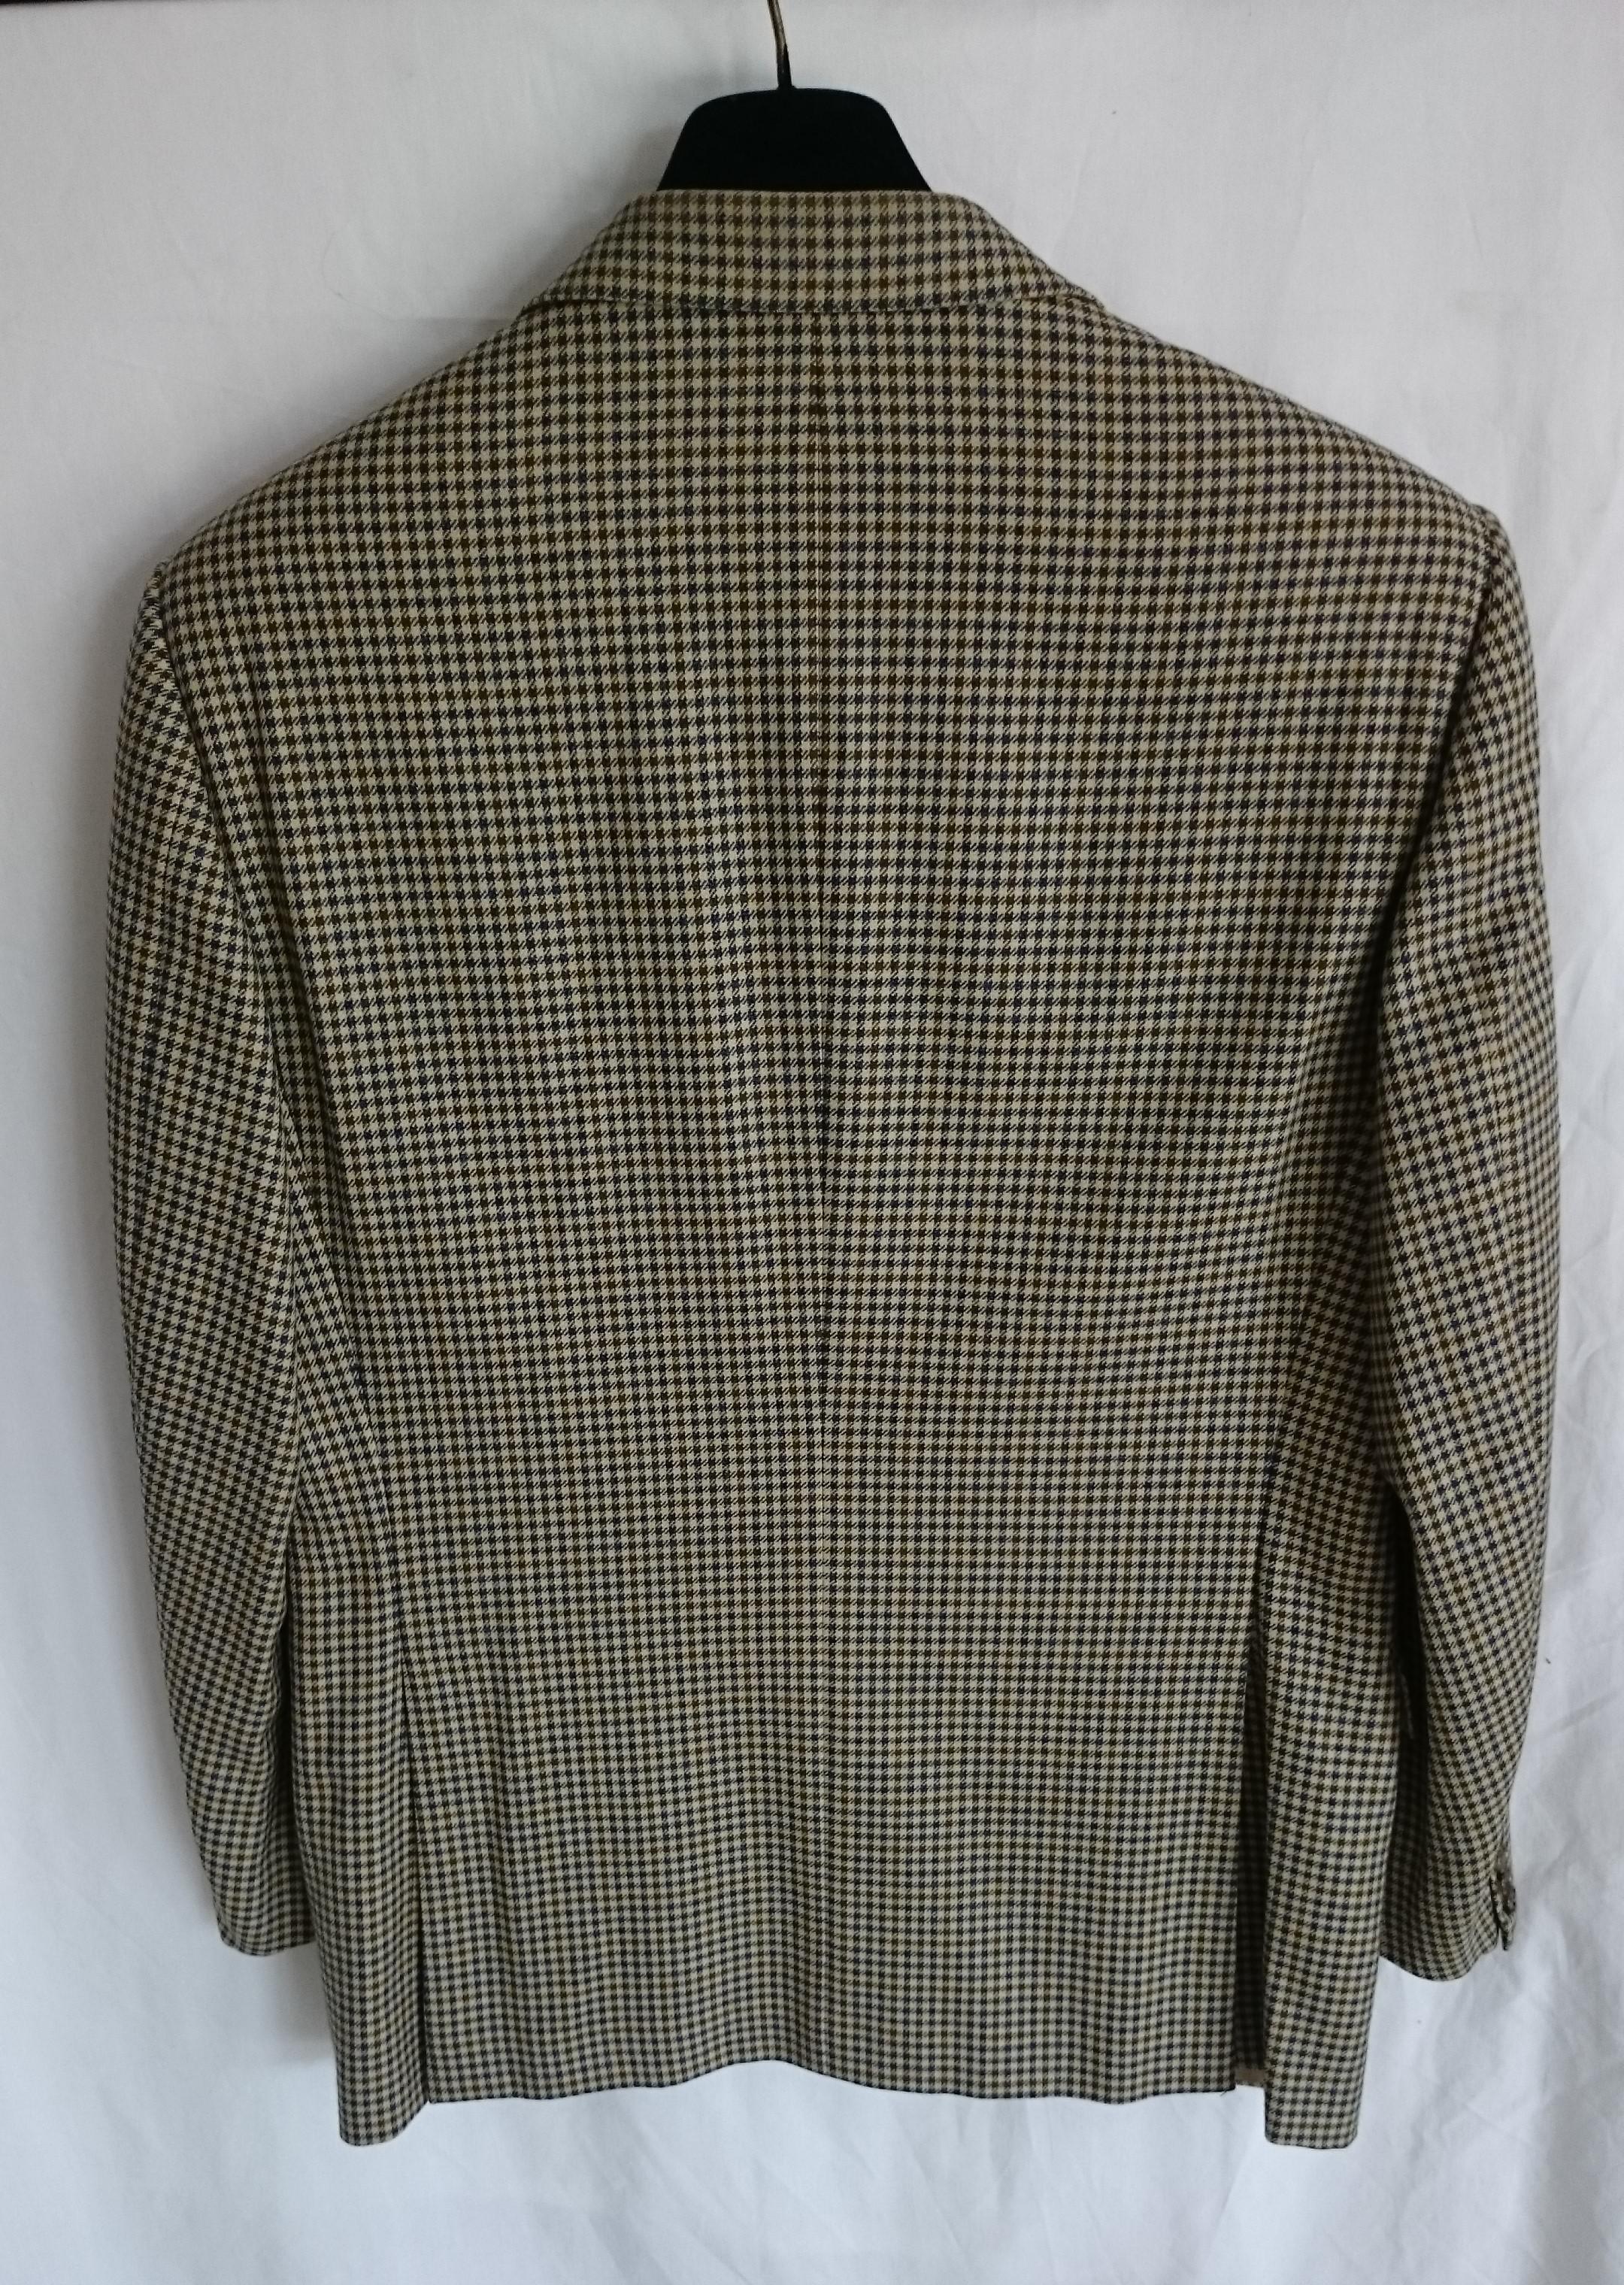 HERMES Men's Jacket Pied de Poule Fabric Wool Jacket - New.

SIZE: IT 50
By 